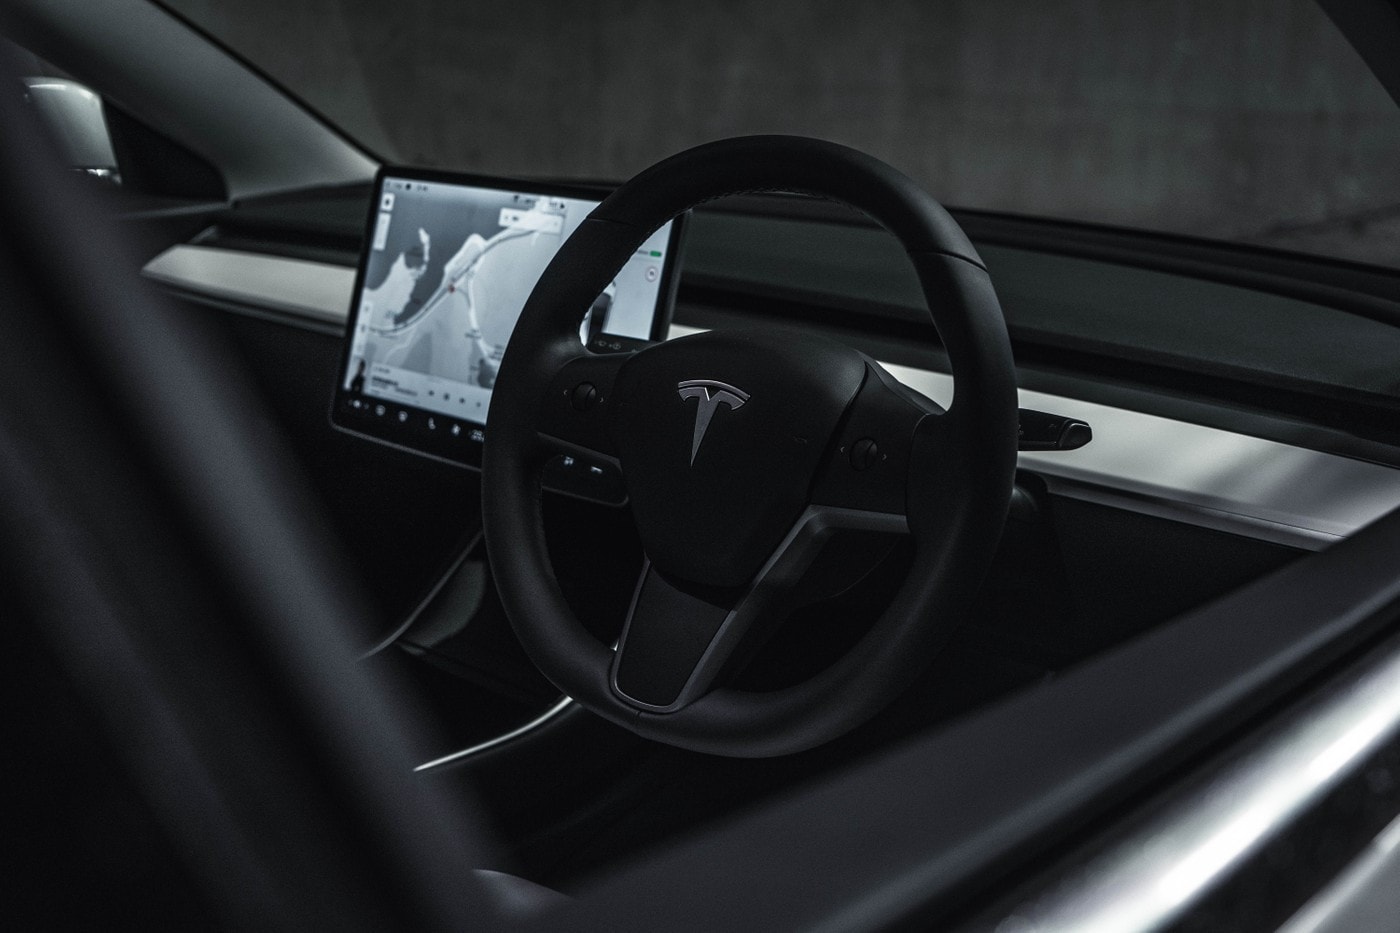 Tesla 自動駕駛軟體即將支援「道路速限標誌」、「紅綠燈號誌」辨識功能